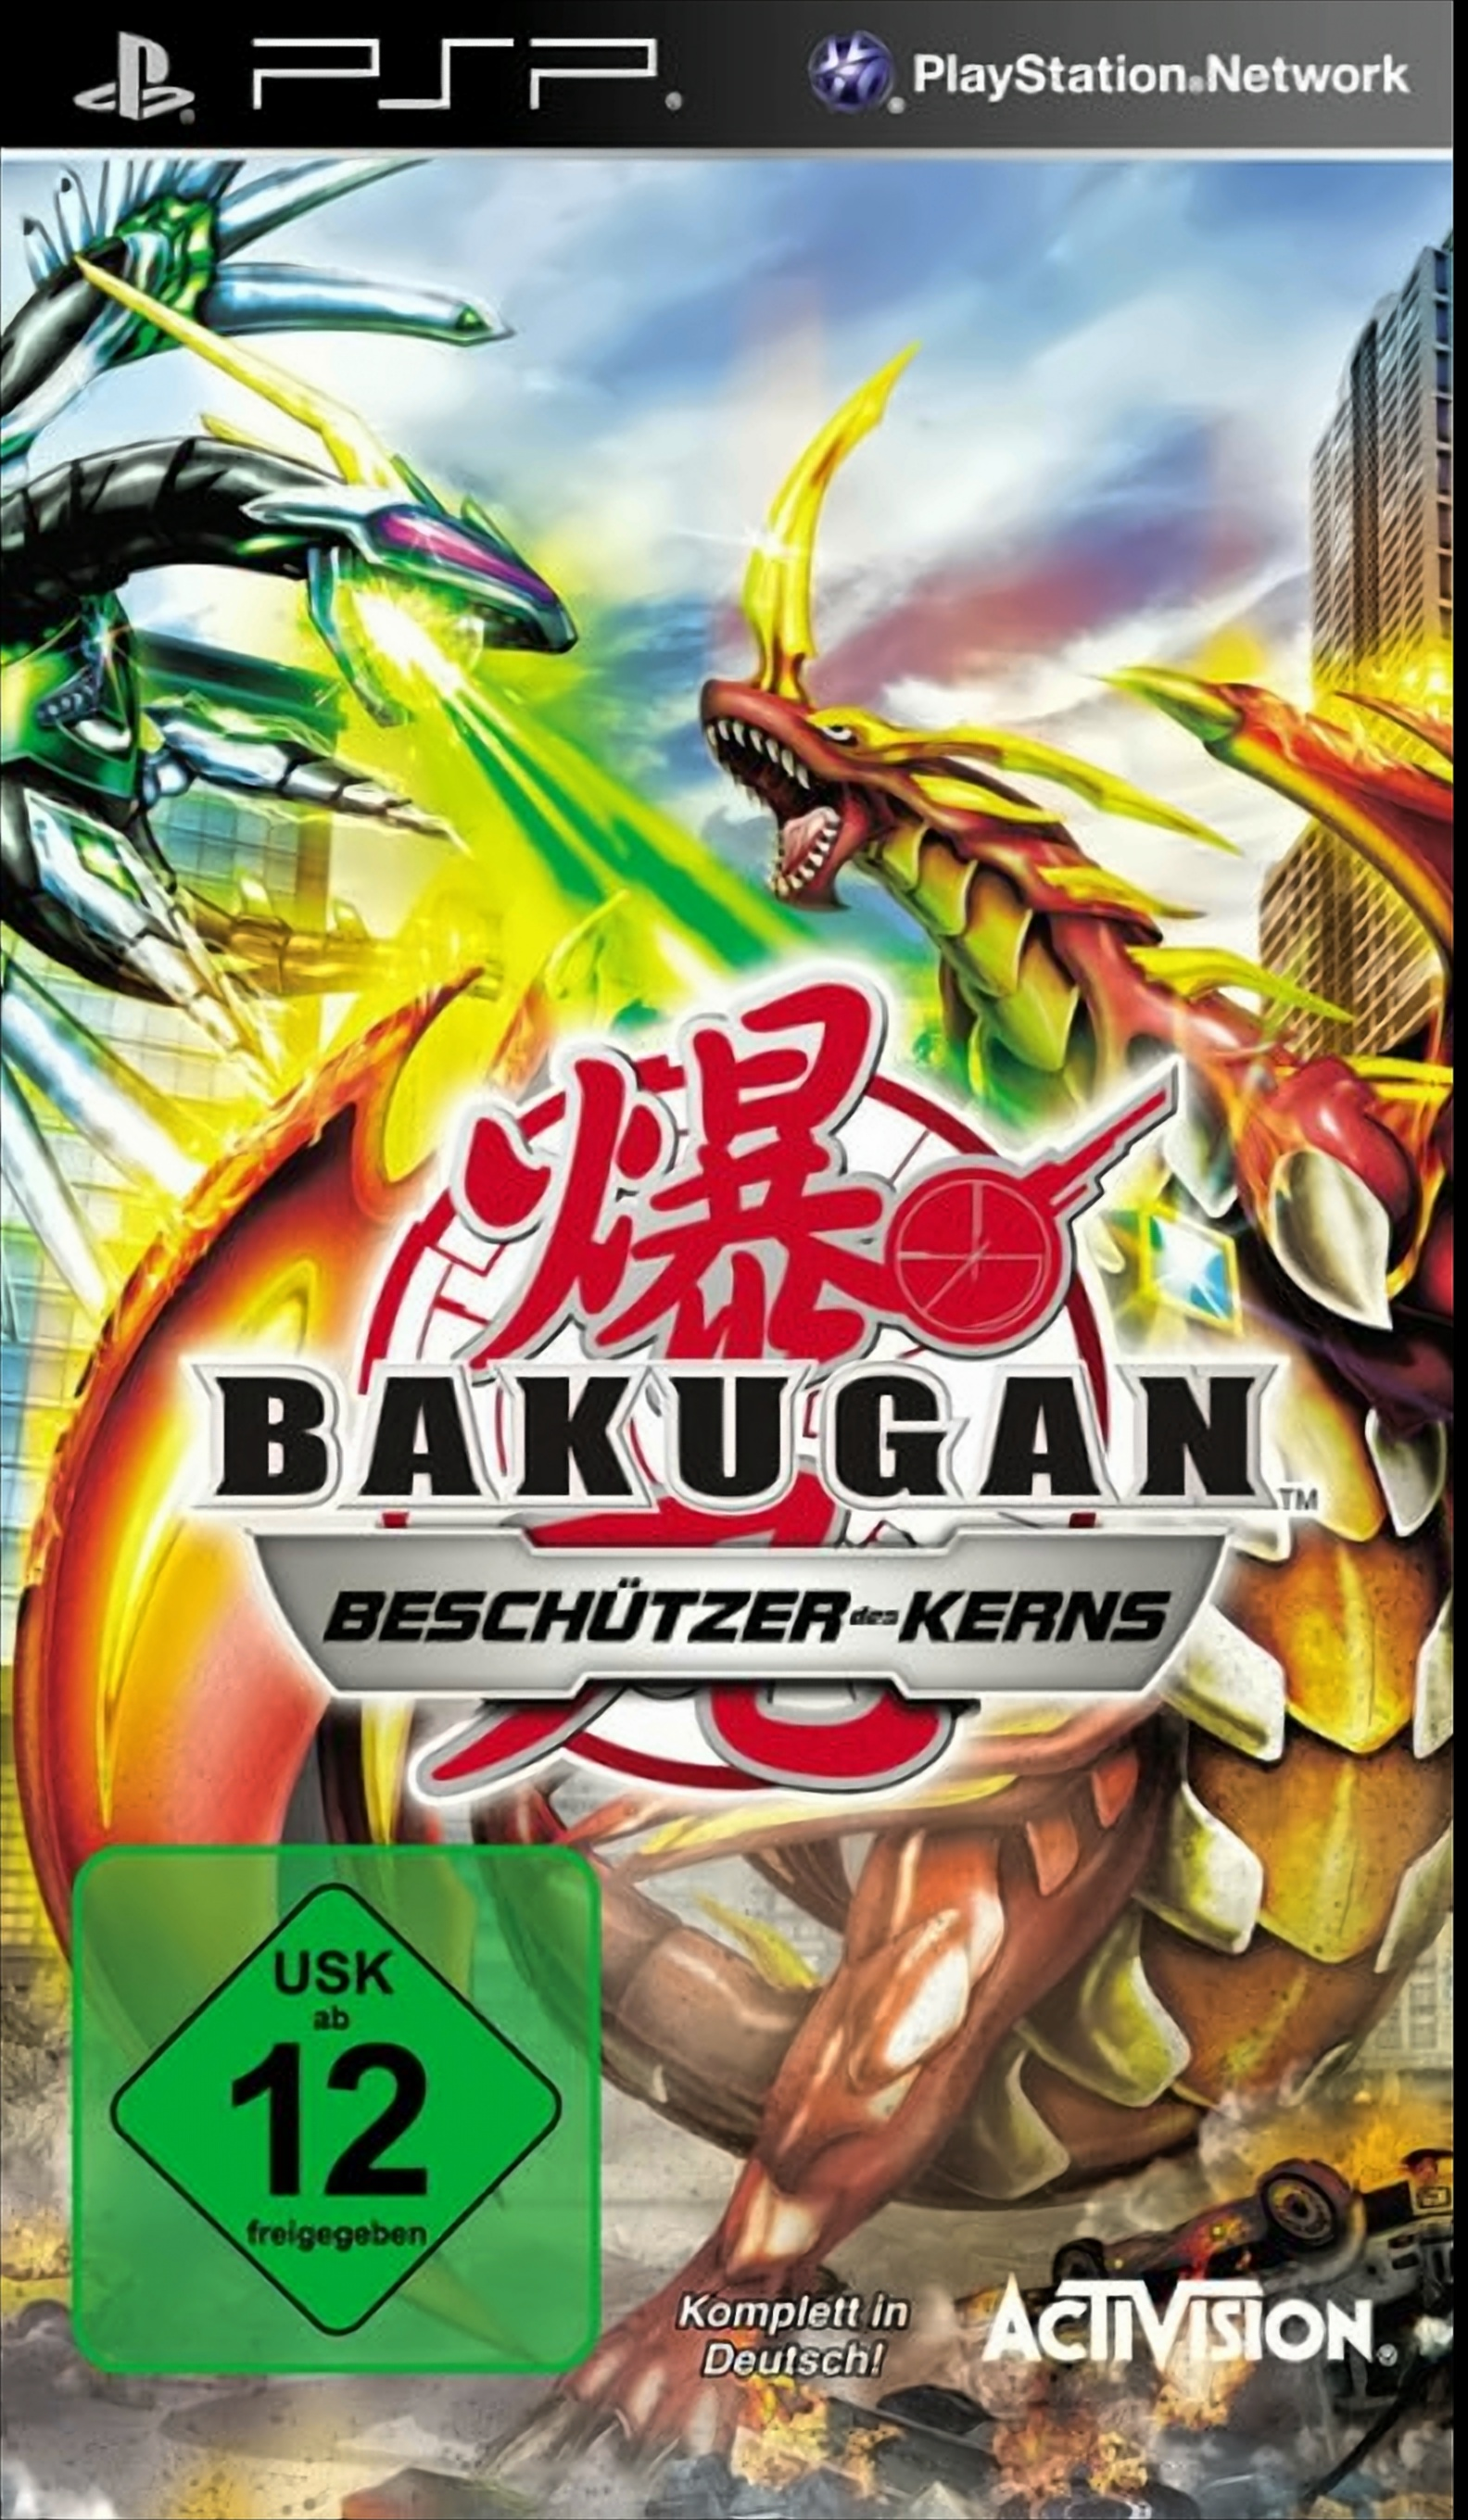 Bakugan Beschützer des Battle [PSP] Brawlers: - Kerns